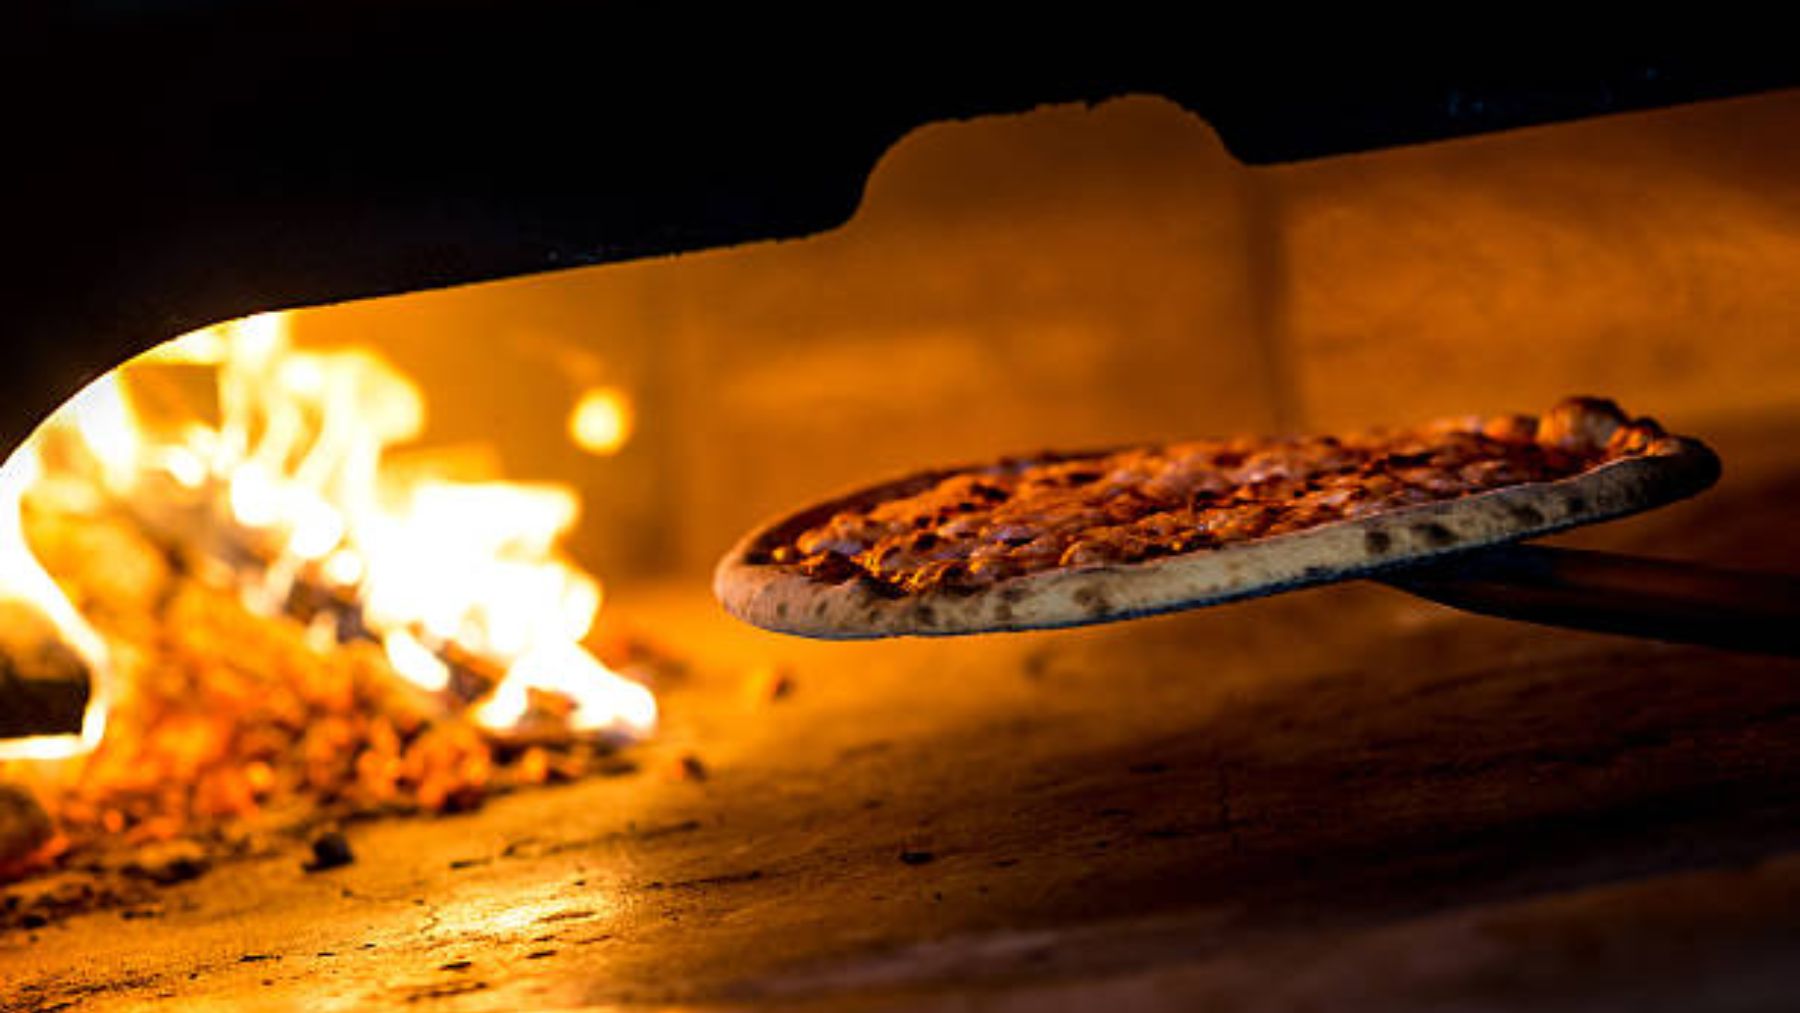 Descubre de qué modo podemos cocinar la pizza para que sepa como si fuera de horno de leña